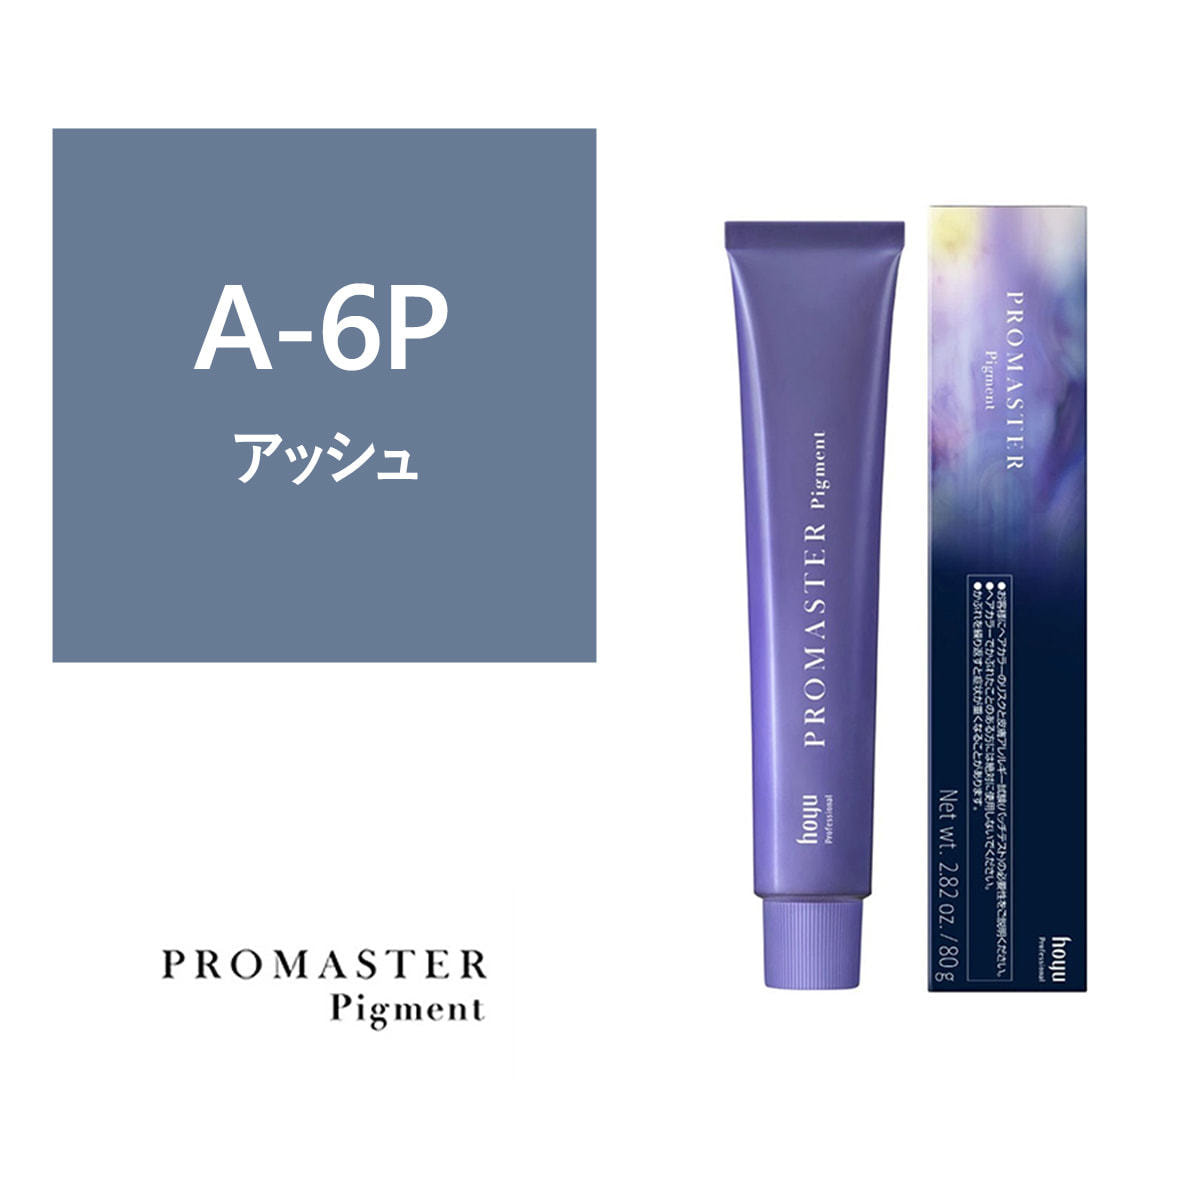 プロマスターピグメント A-6P 80g《ファッションカラー》【医薬部外品 